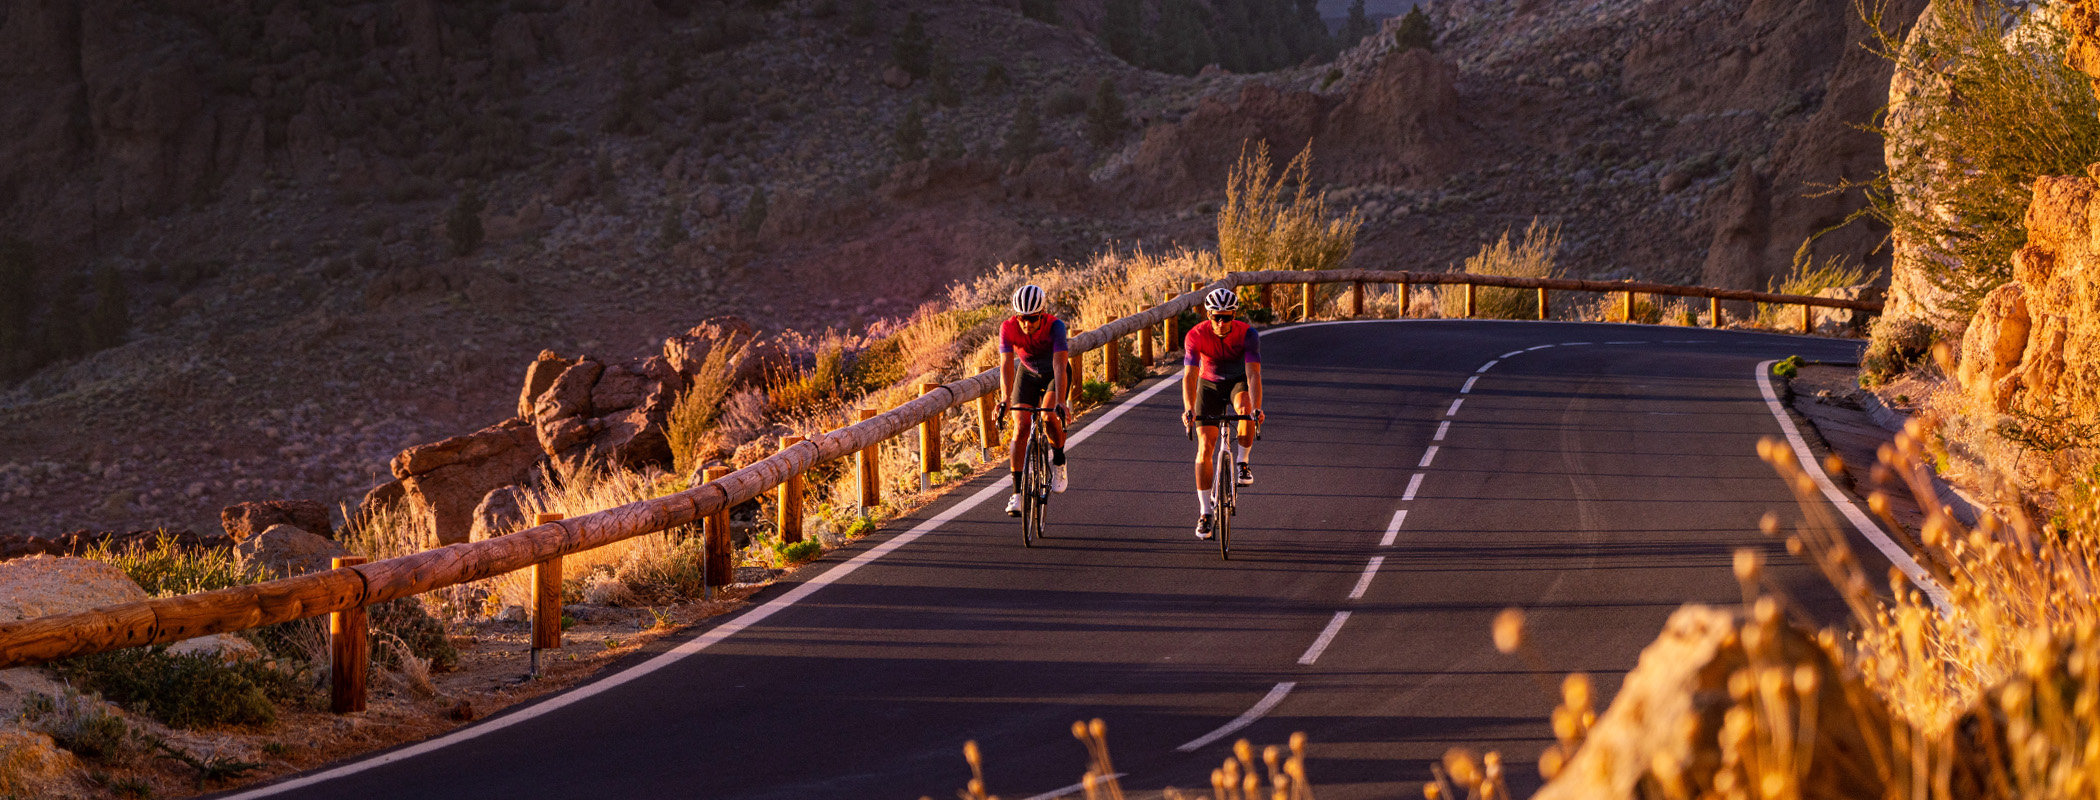  Radfahrer fahren in den Sonnenstrahlen auf Teneriffa nahe dem Teide und tragen die Radsportbekleidung von Luxa.